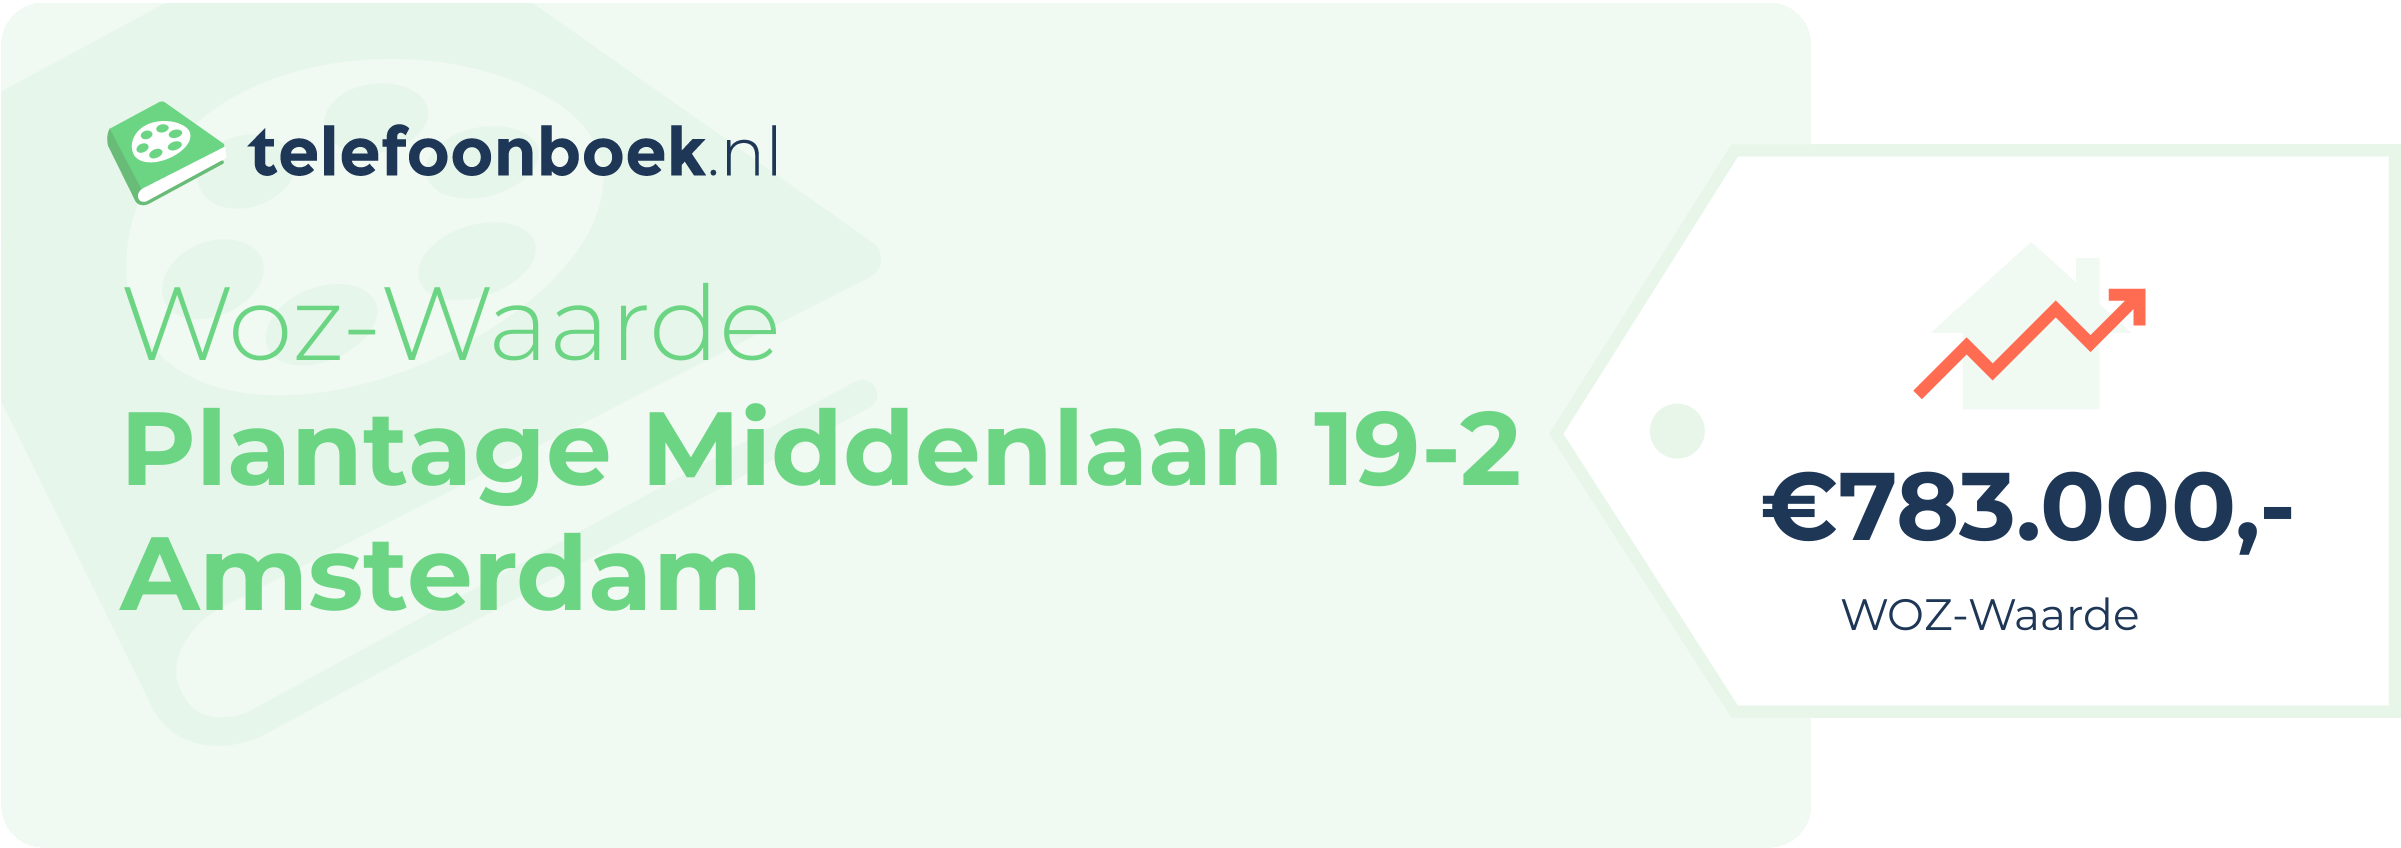 WOZ-waarde Plantage Middenlaan 19-2 Amsterdam